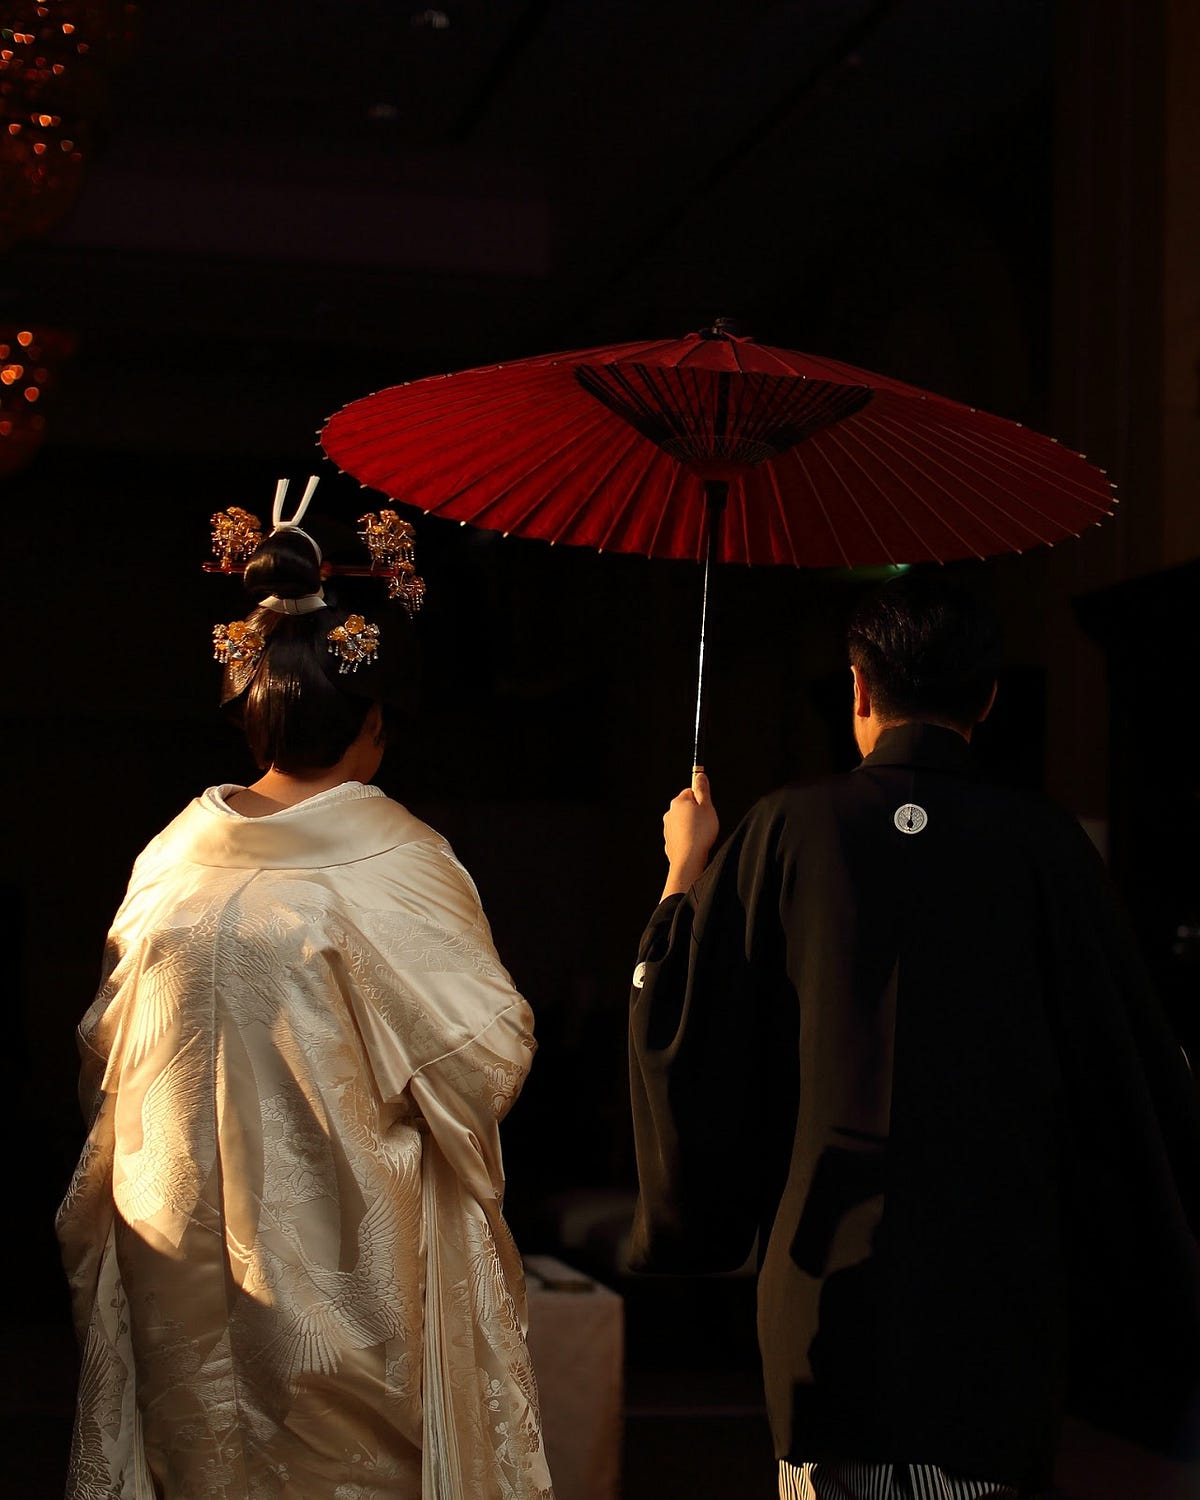 Japanese Weddings